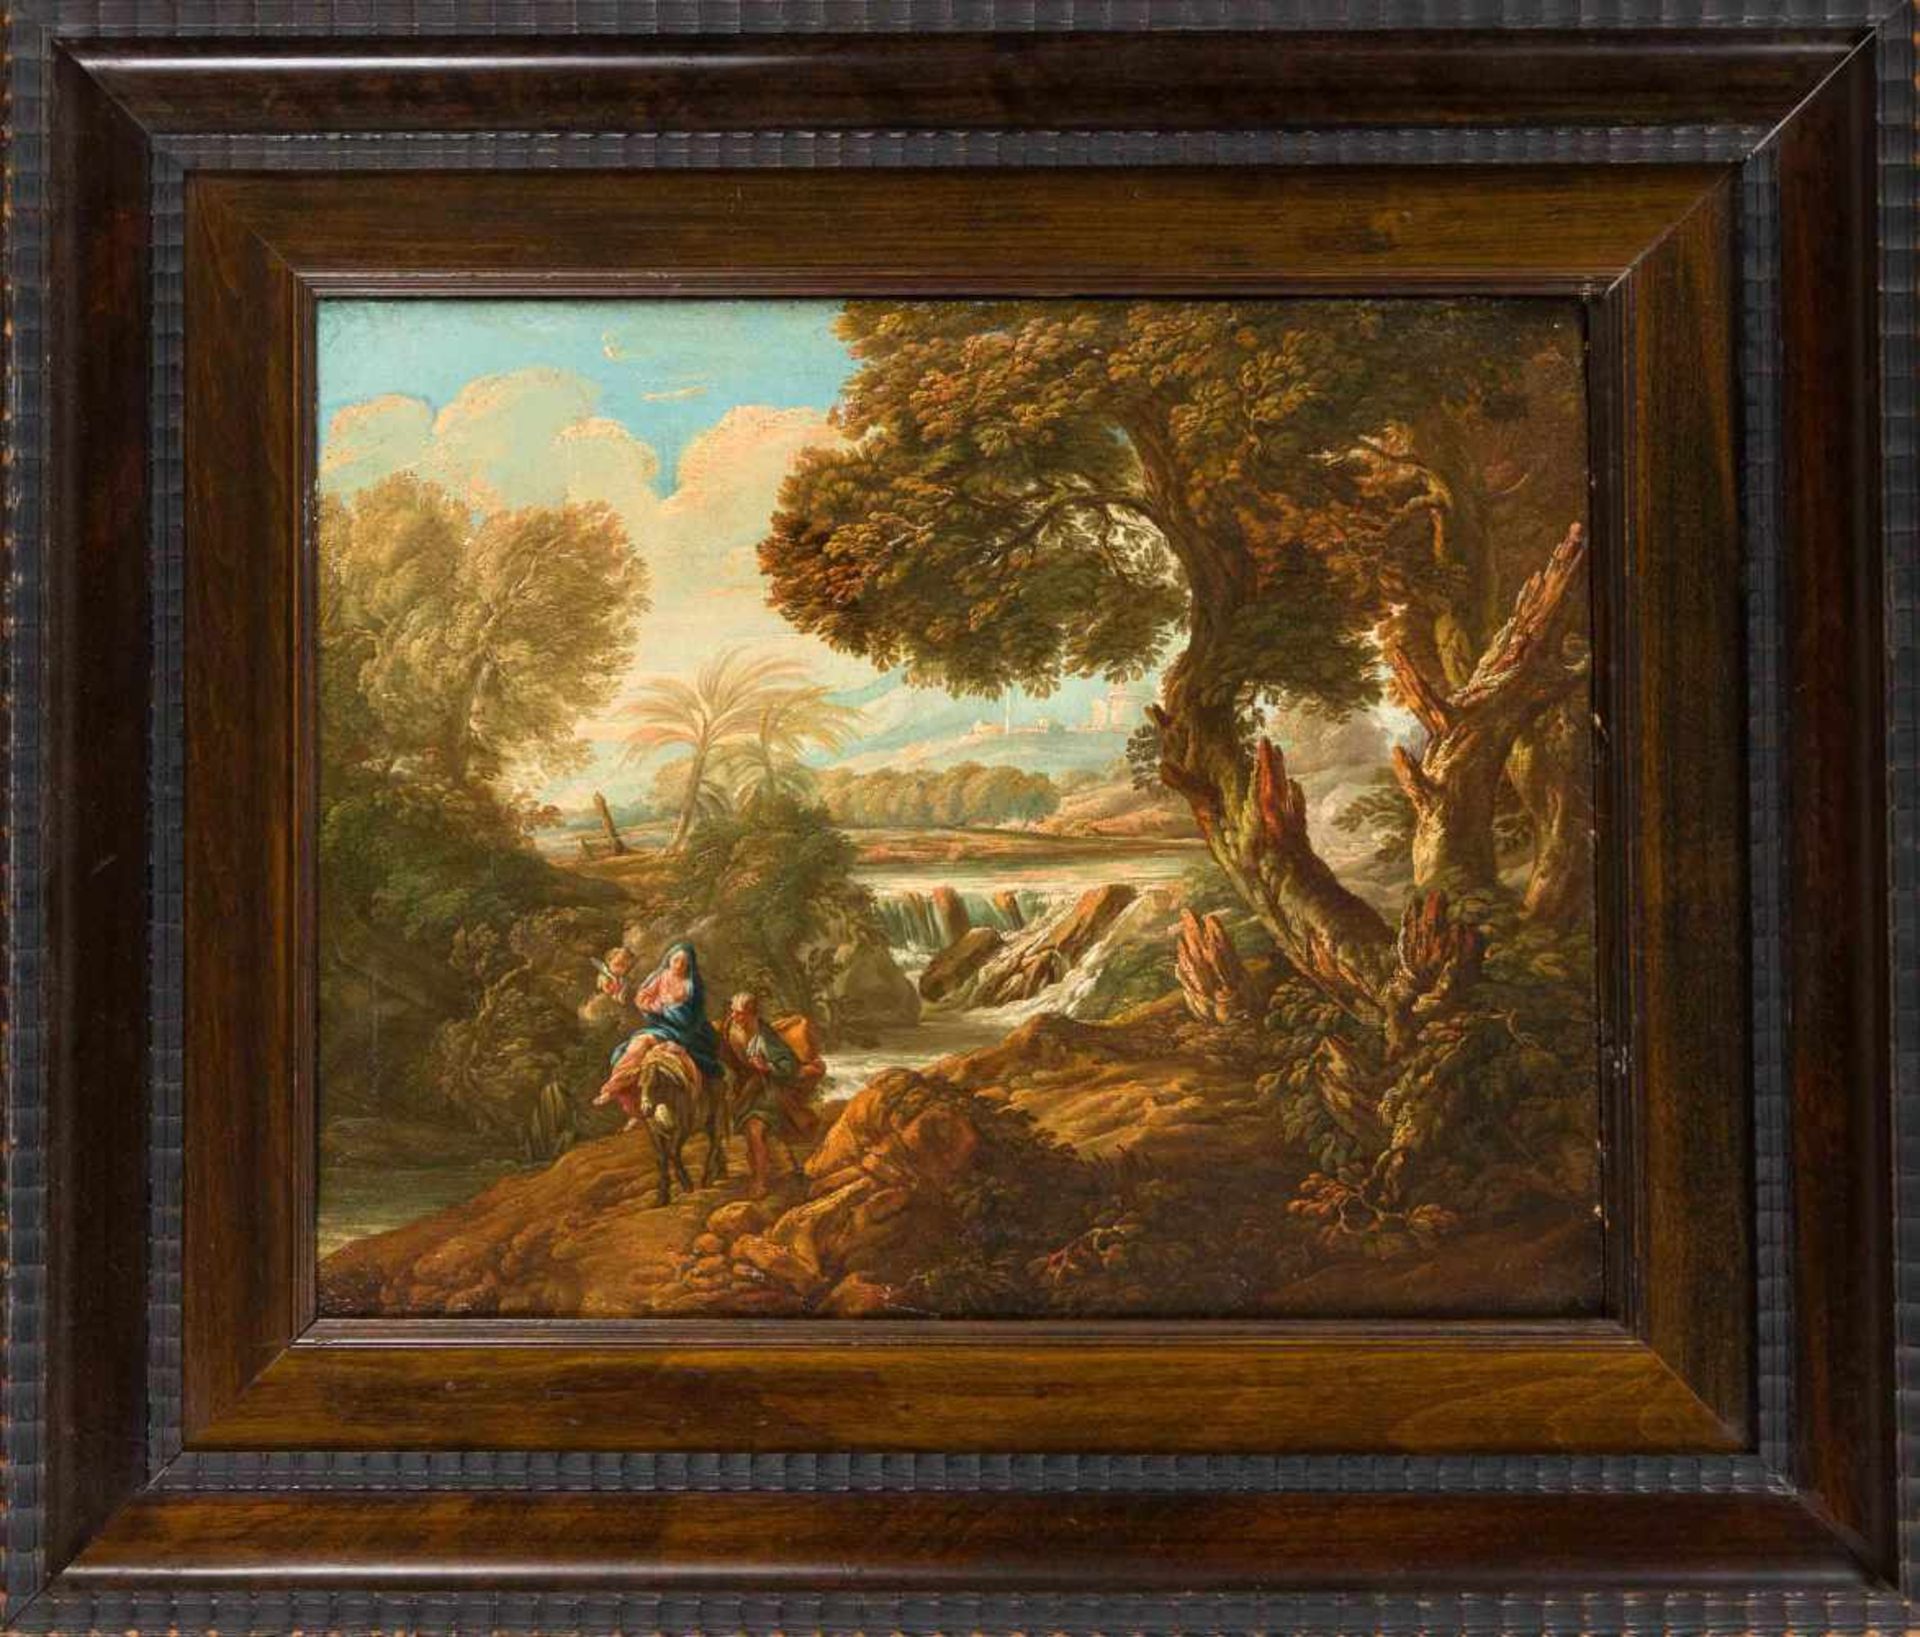 Anonymer Maler um 1800, "Flucht nach Ägypten", die heilige Familie begleitet von zweiPutti in